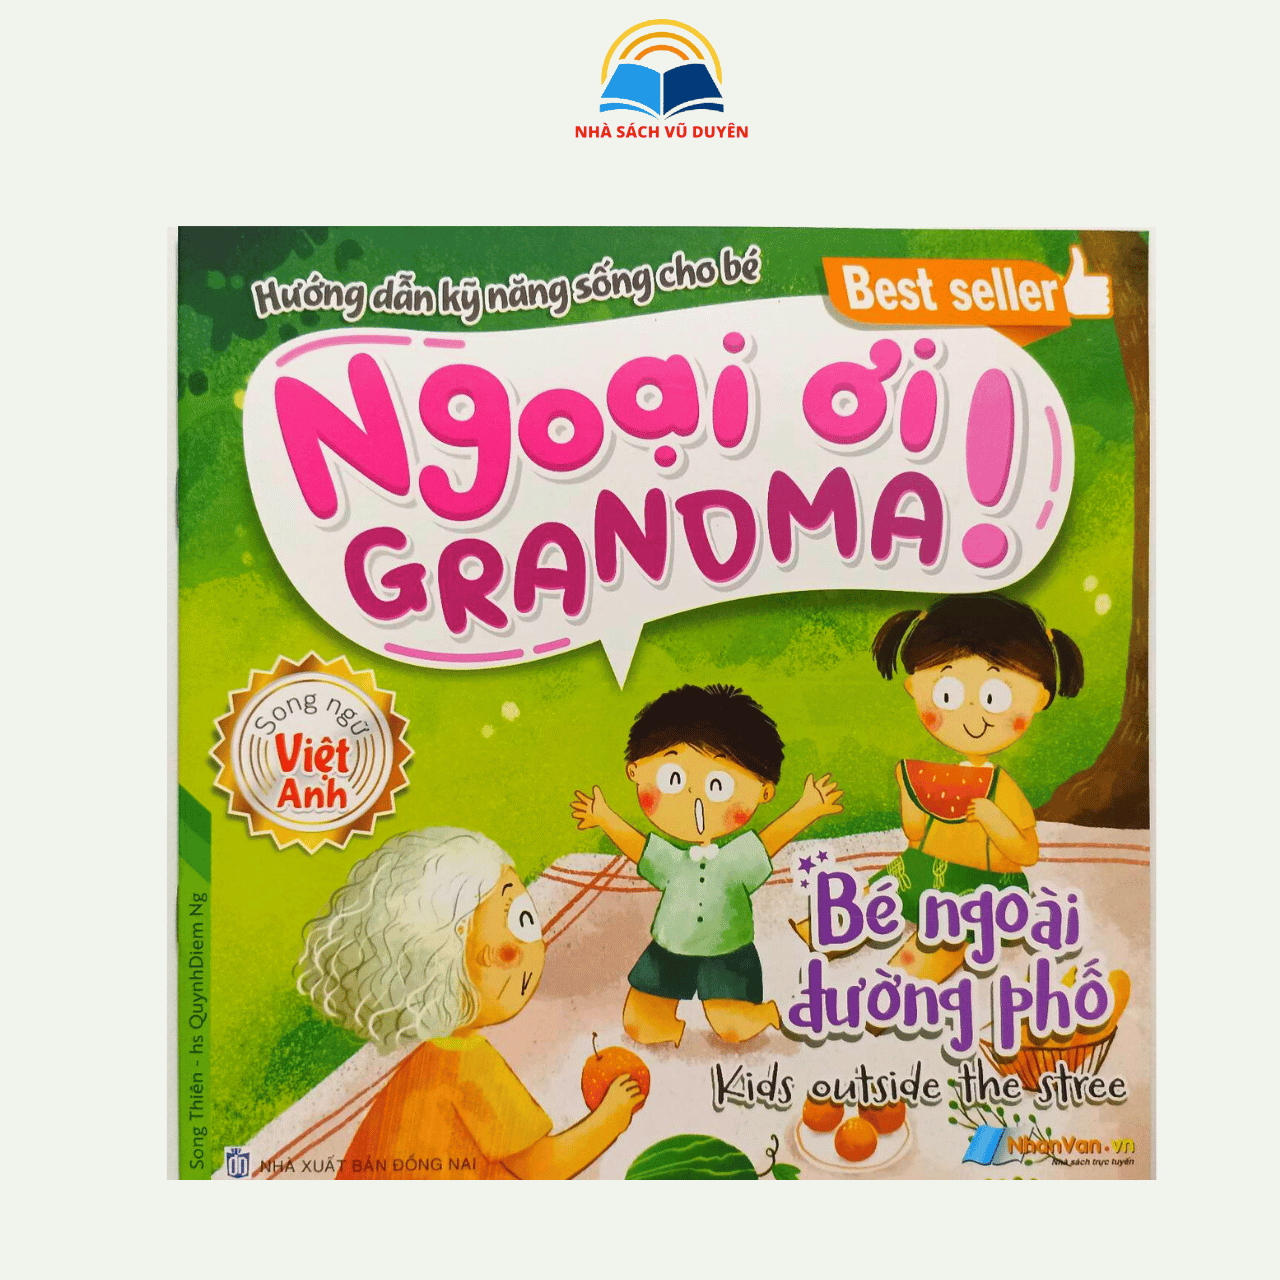 Sách Hướng dẫn kỹ năng sống cho bé - Ngoại ơi Grandma! (Song ngữ việt - anh)